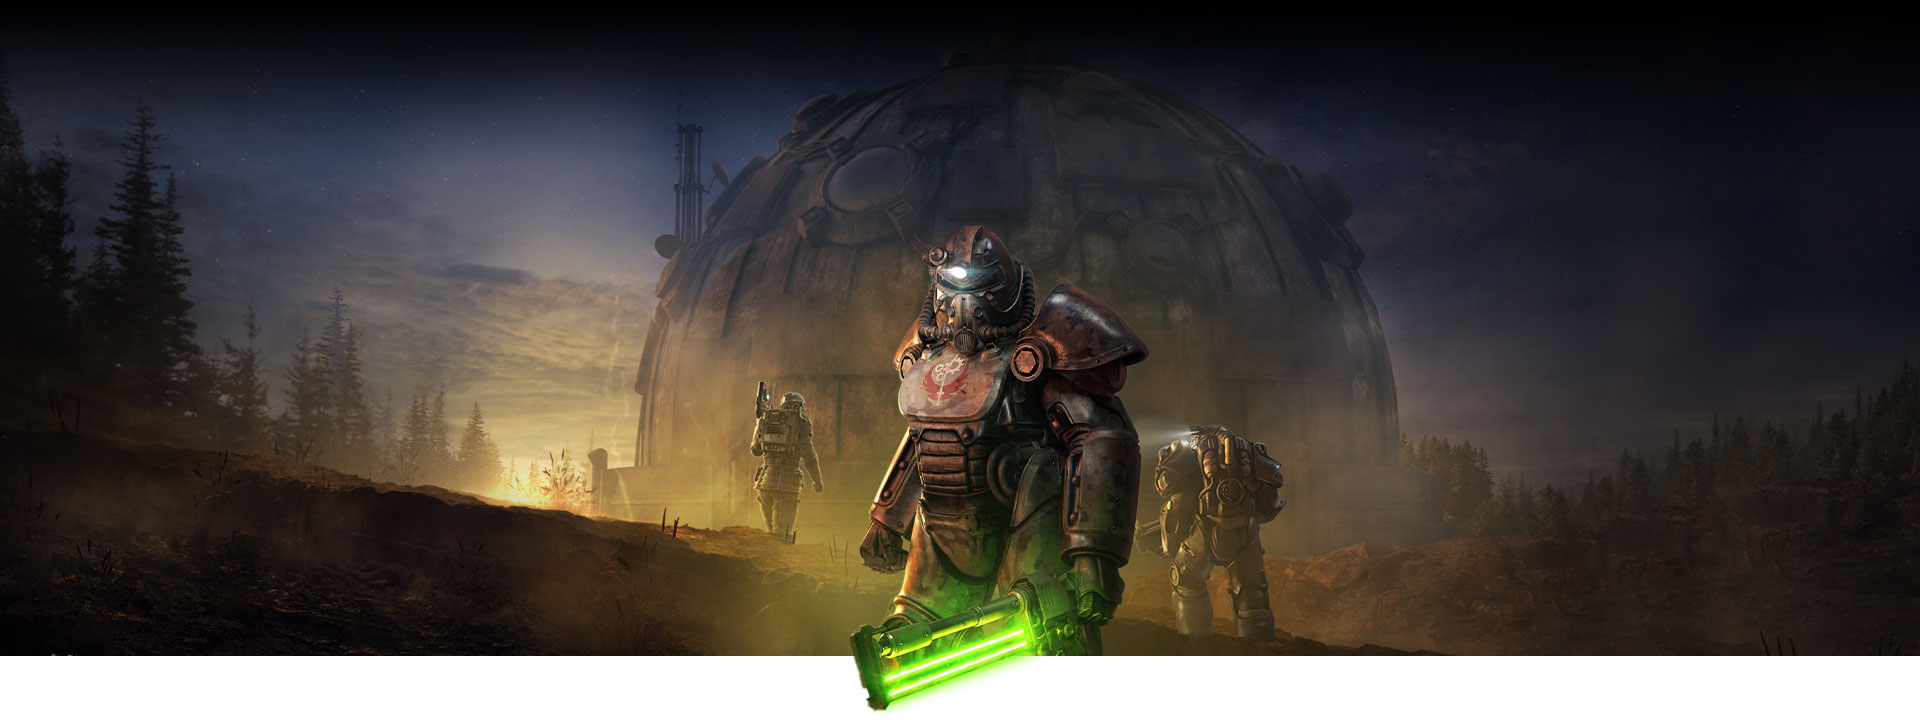 Power Armor를 입은 캐릭터가 빛나는 근접전 무기를 들고 대형 돔 건물 앞에 서 있습니다.